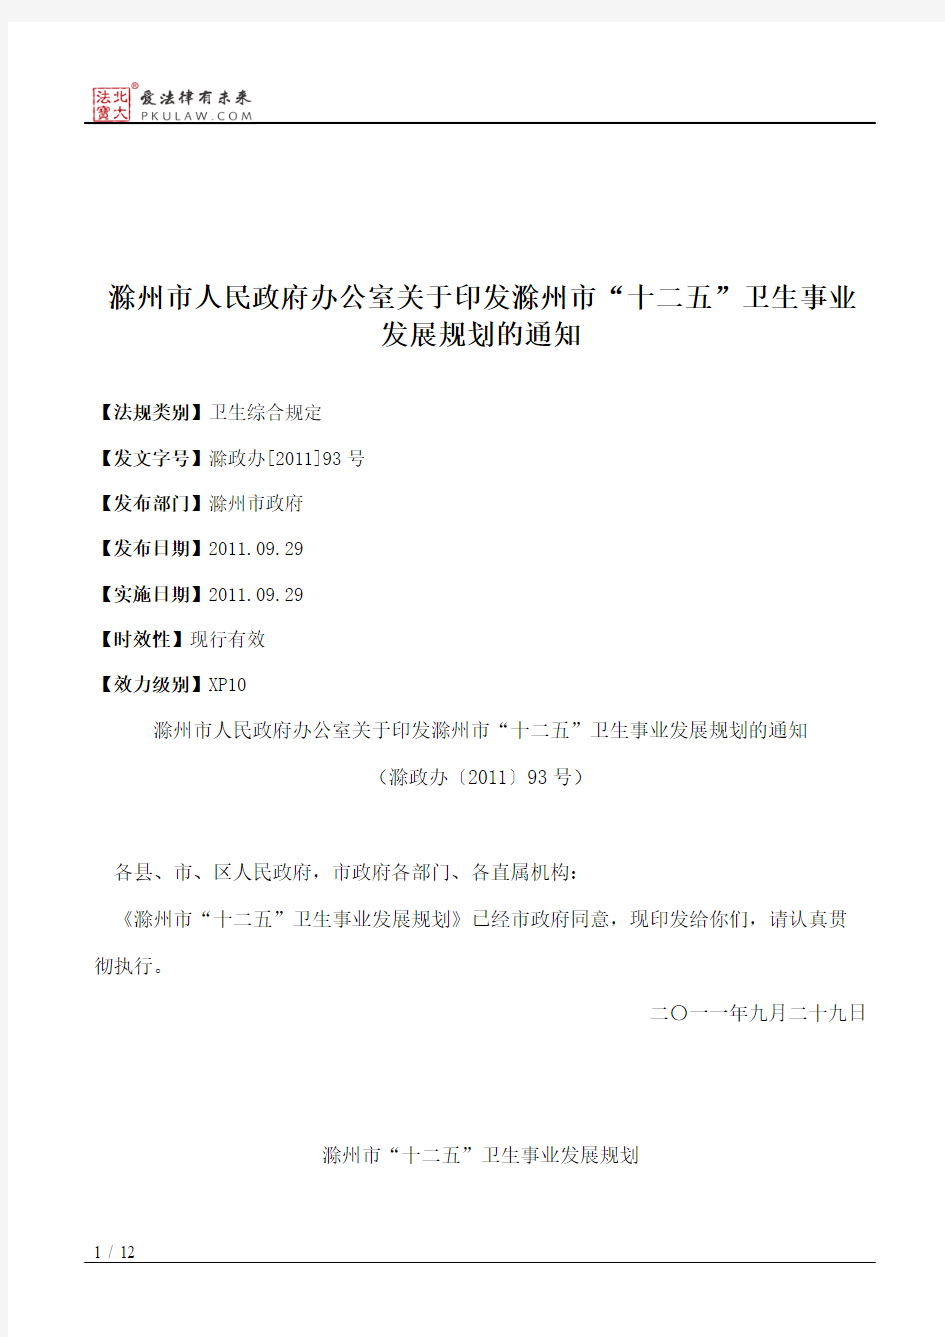 滁州市人民政府办公室关于印发滁州市“十二五”卫生事业发展规划的通知